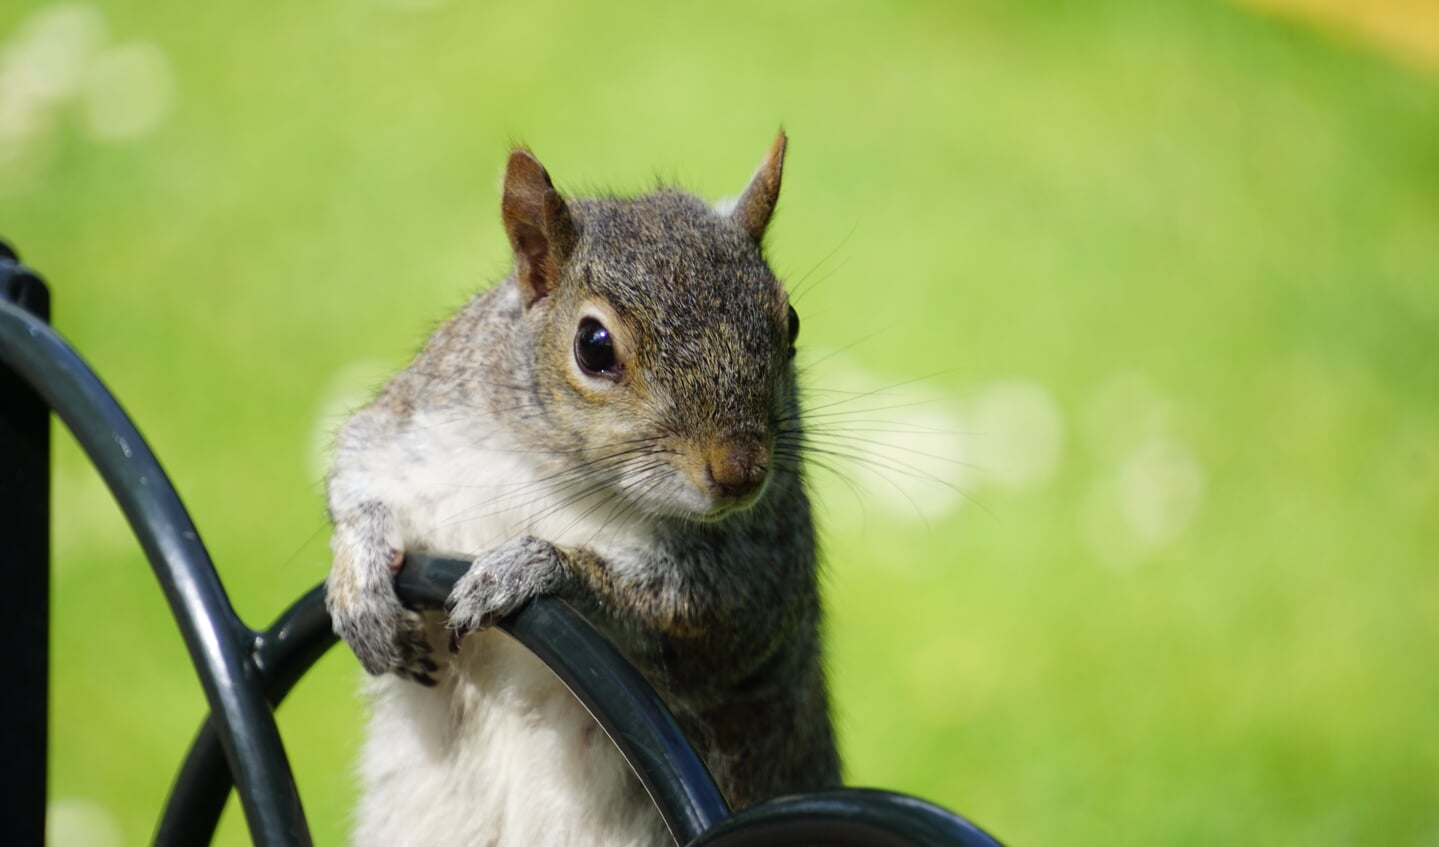 De foto is genomen op 14 augustus 2022 in ST James’s Park London. Op de foto is een eekhoorn te zie die er van houdt om op de foto gezet te worden.